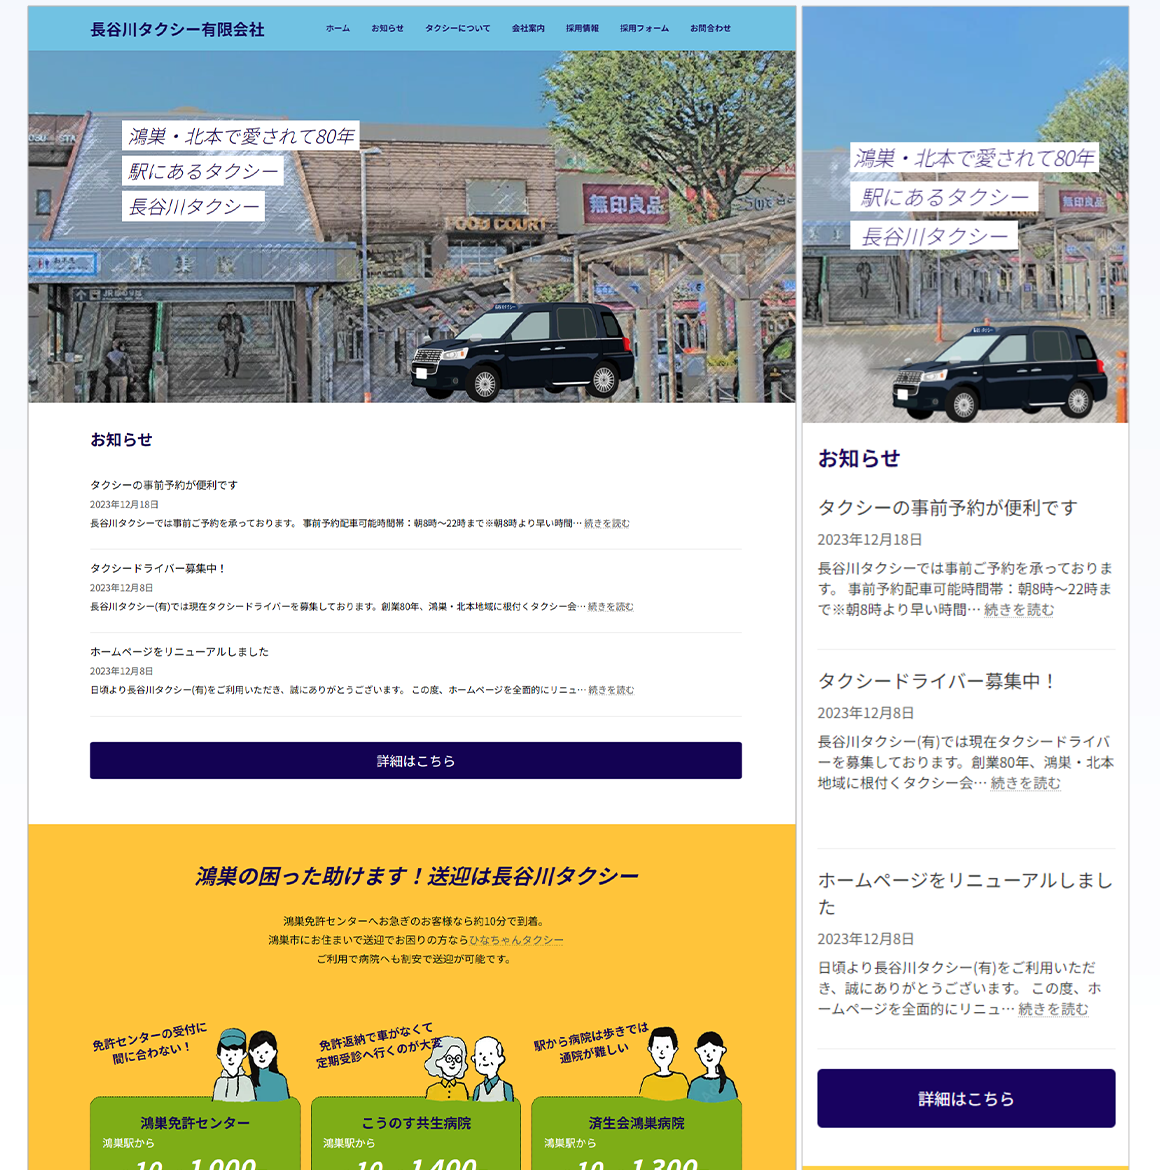 タクシー会社のホームページ画面